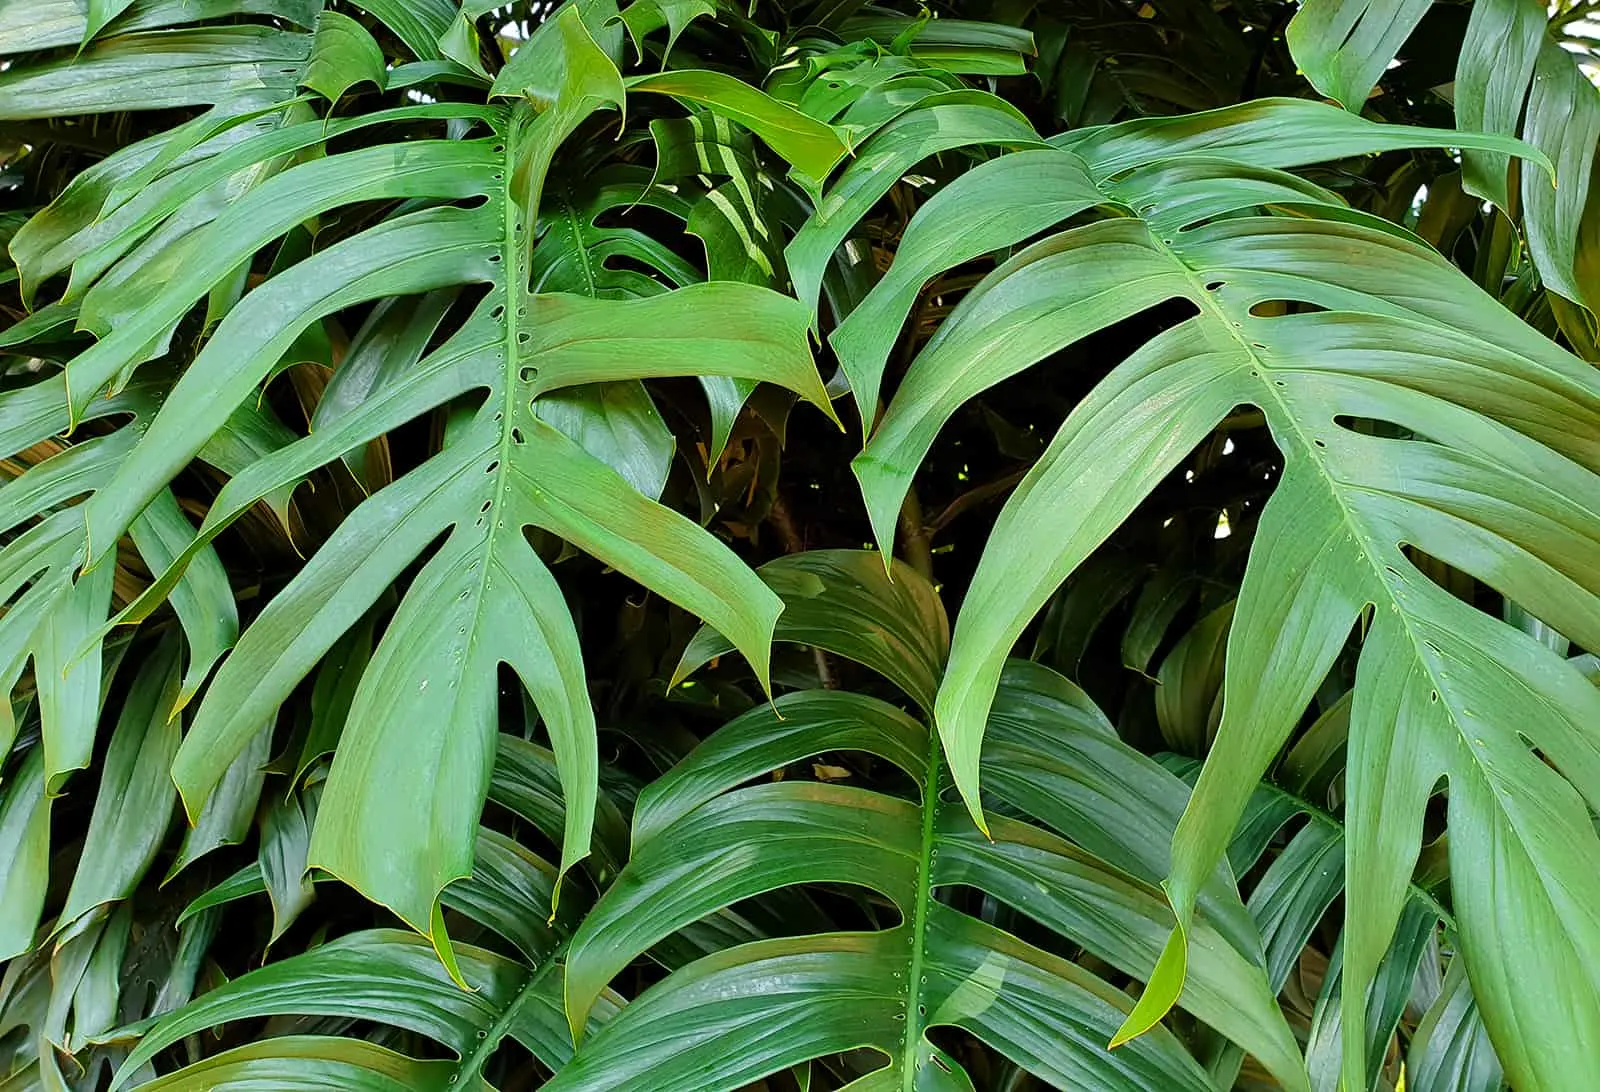 Epipremnum pinnatum leaves in garden